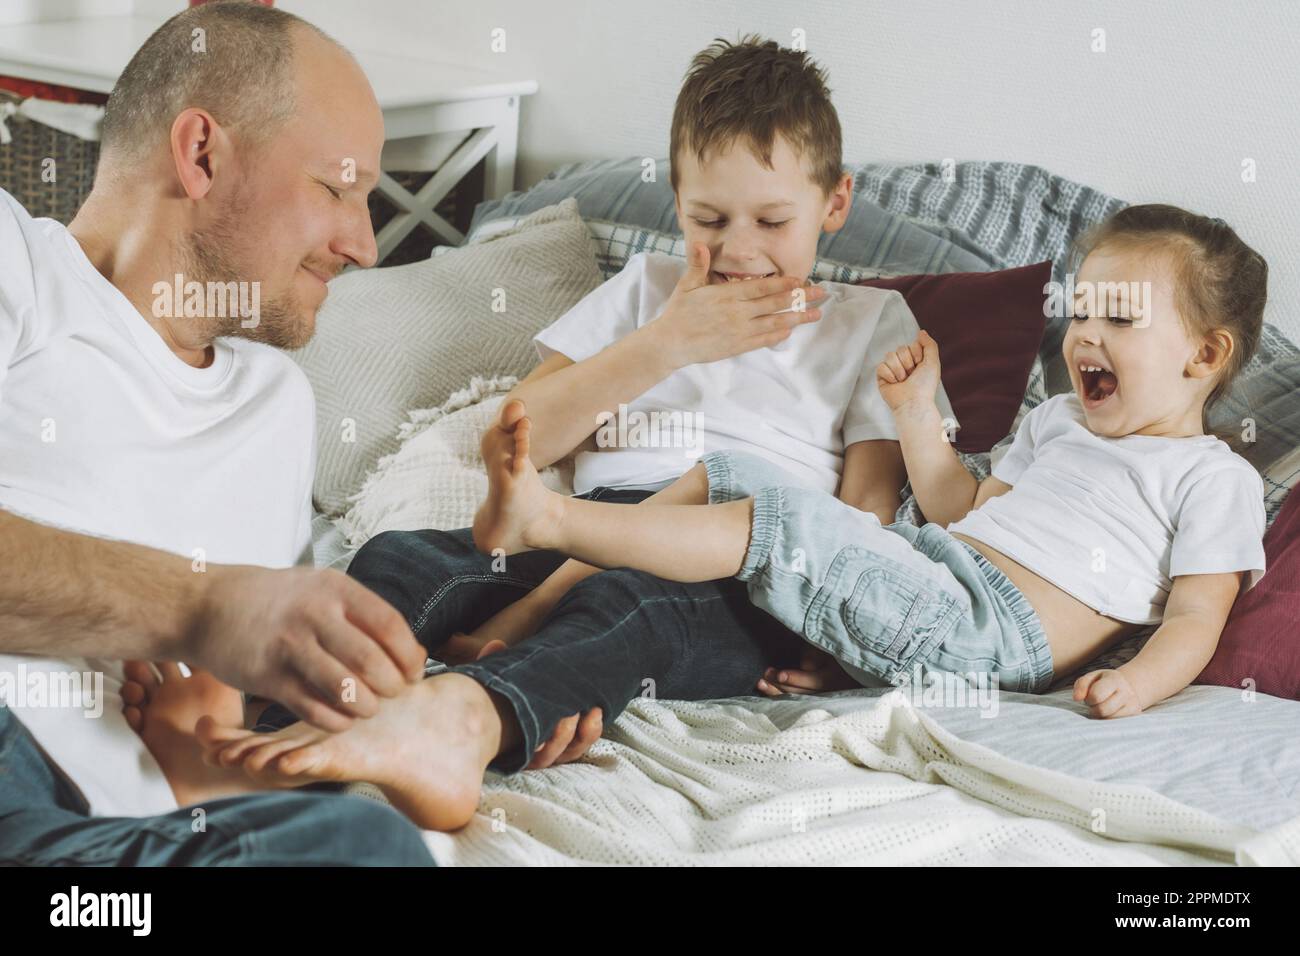 Vater spielt mit zwei Kindern im Bett. Dad kitzelt Kinderfüße. Familie von Daddy, Mädchen und Jungen Stockfoto